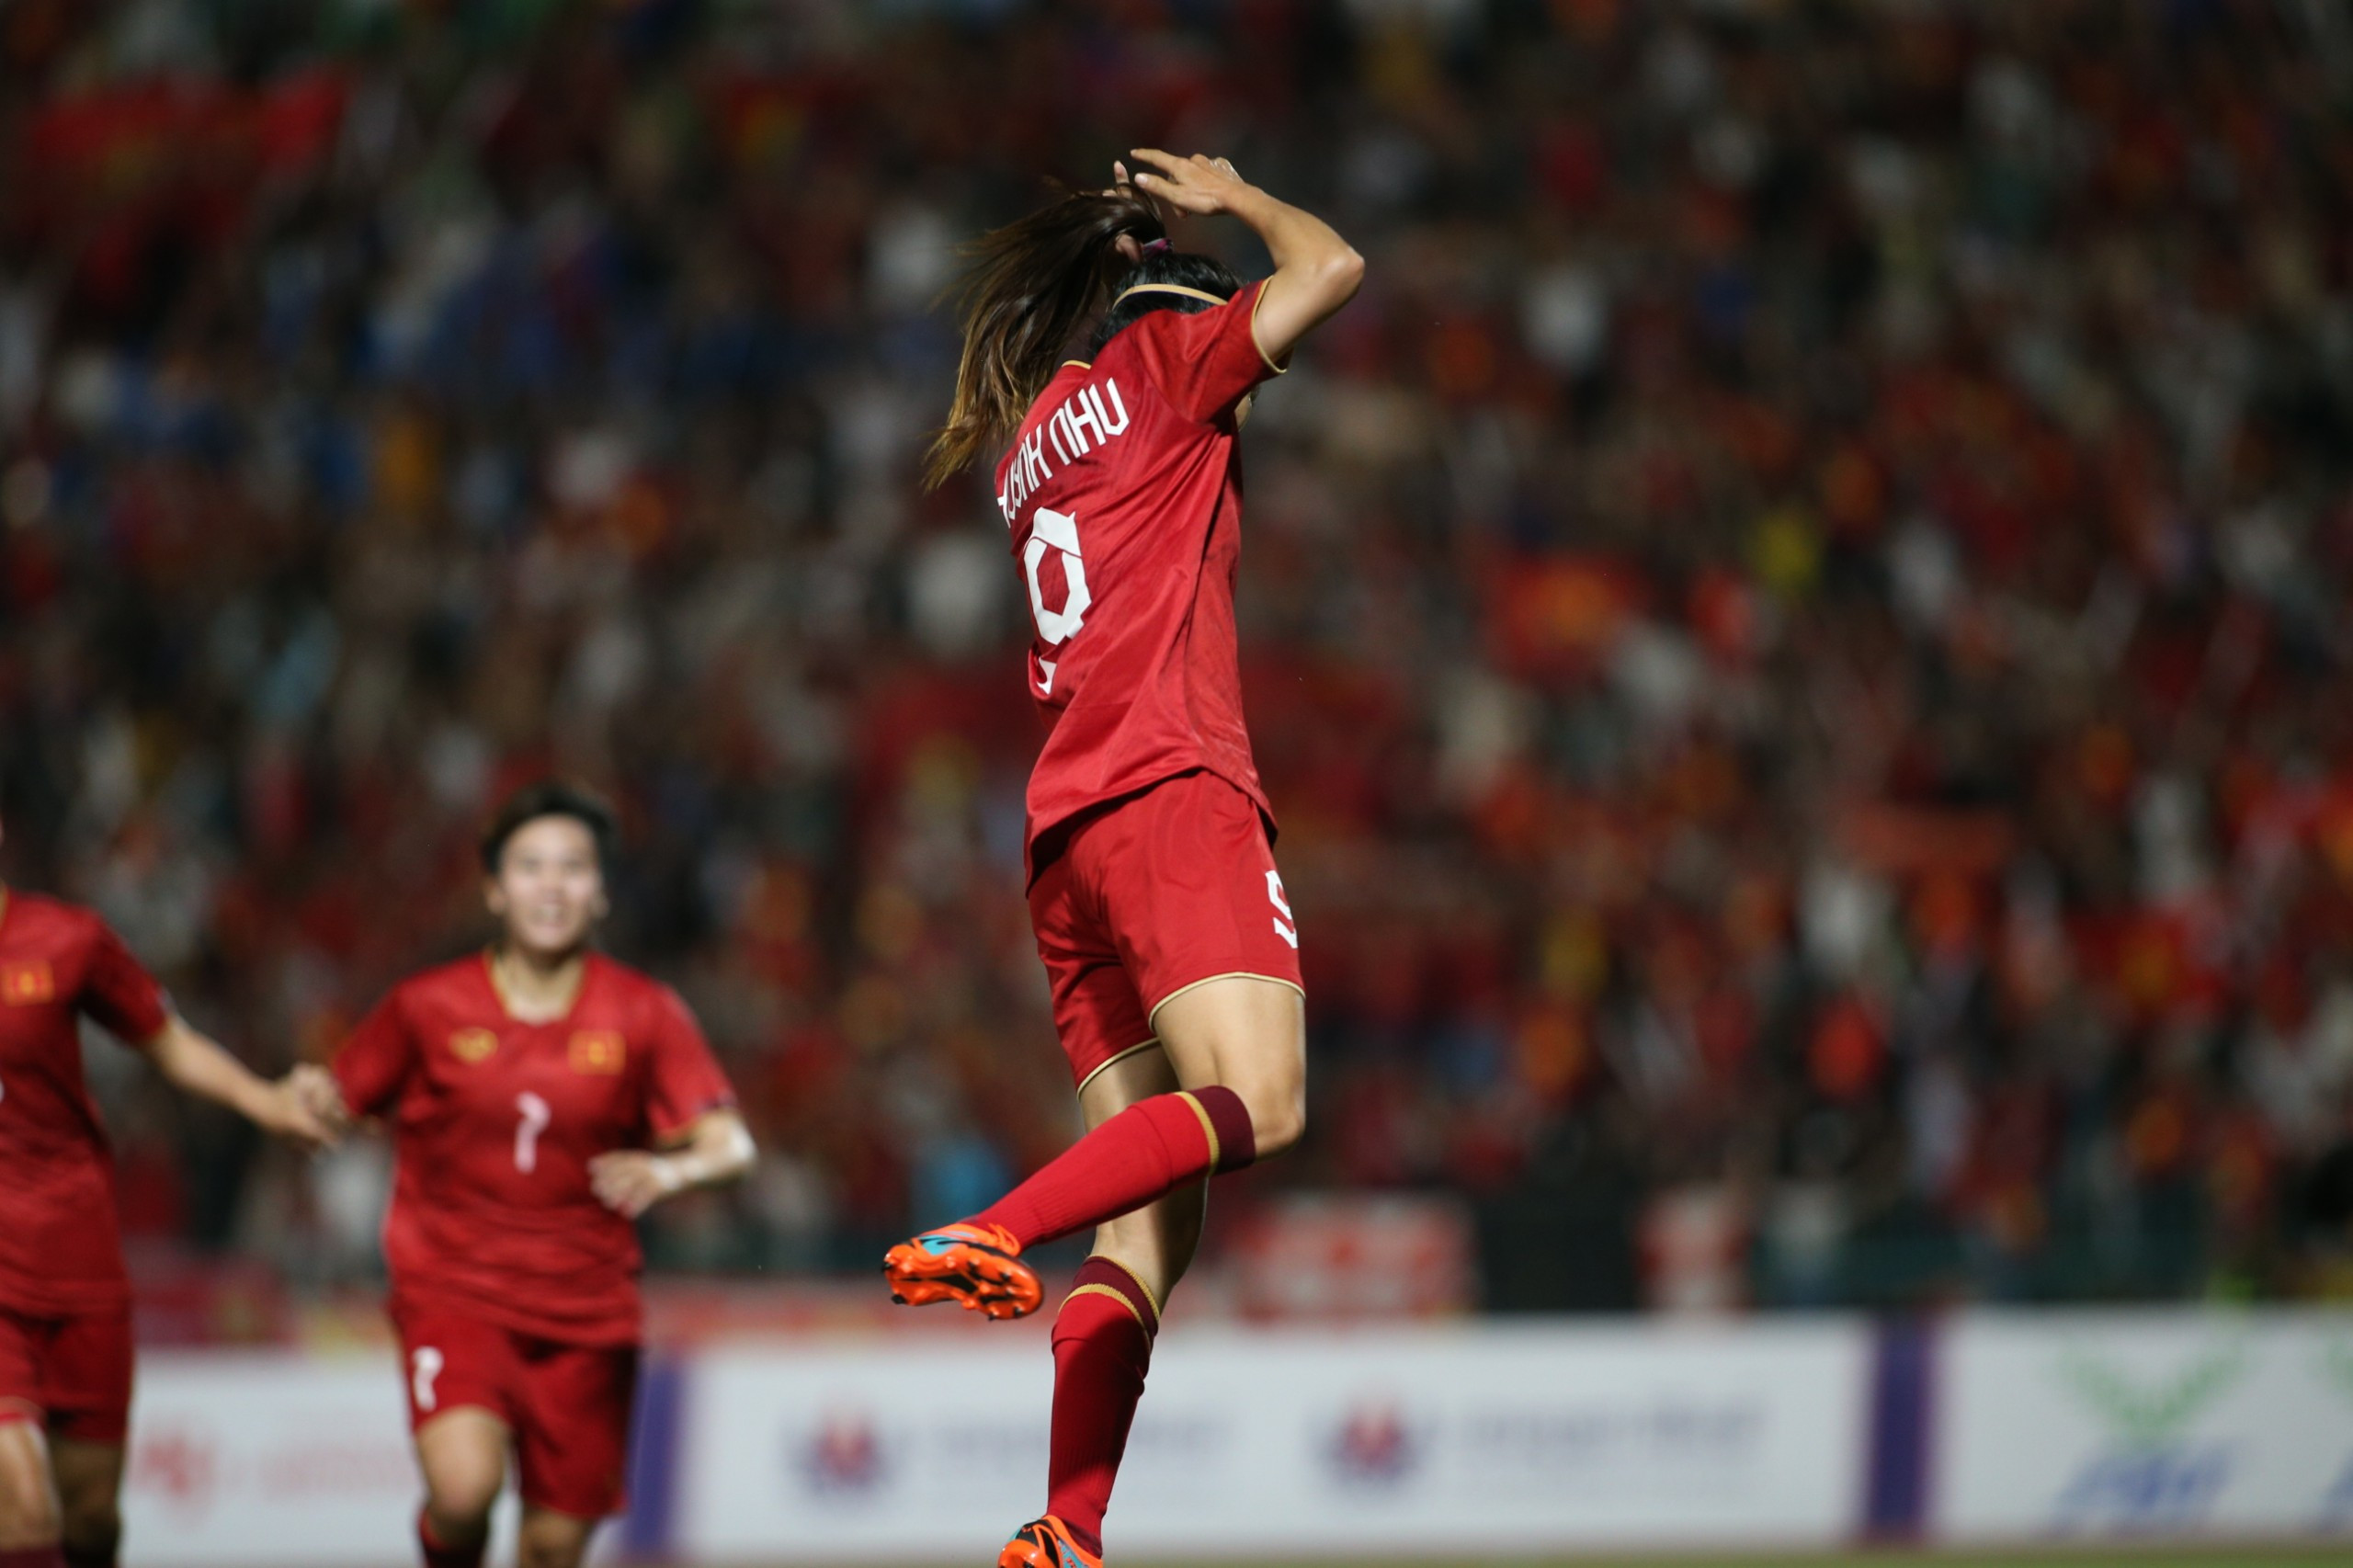 'Xé lưới' Myanmar, Huỳnh Như ăn mừng theo phong cách Ronaldo - Bóng Đá